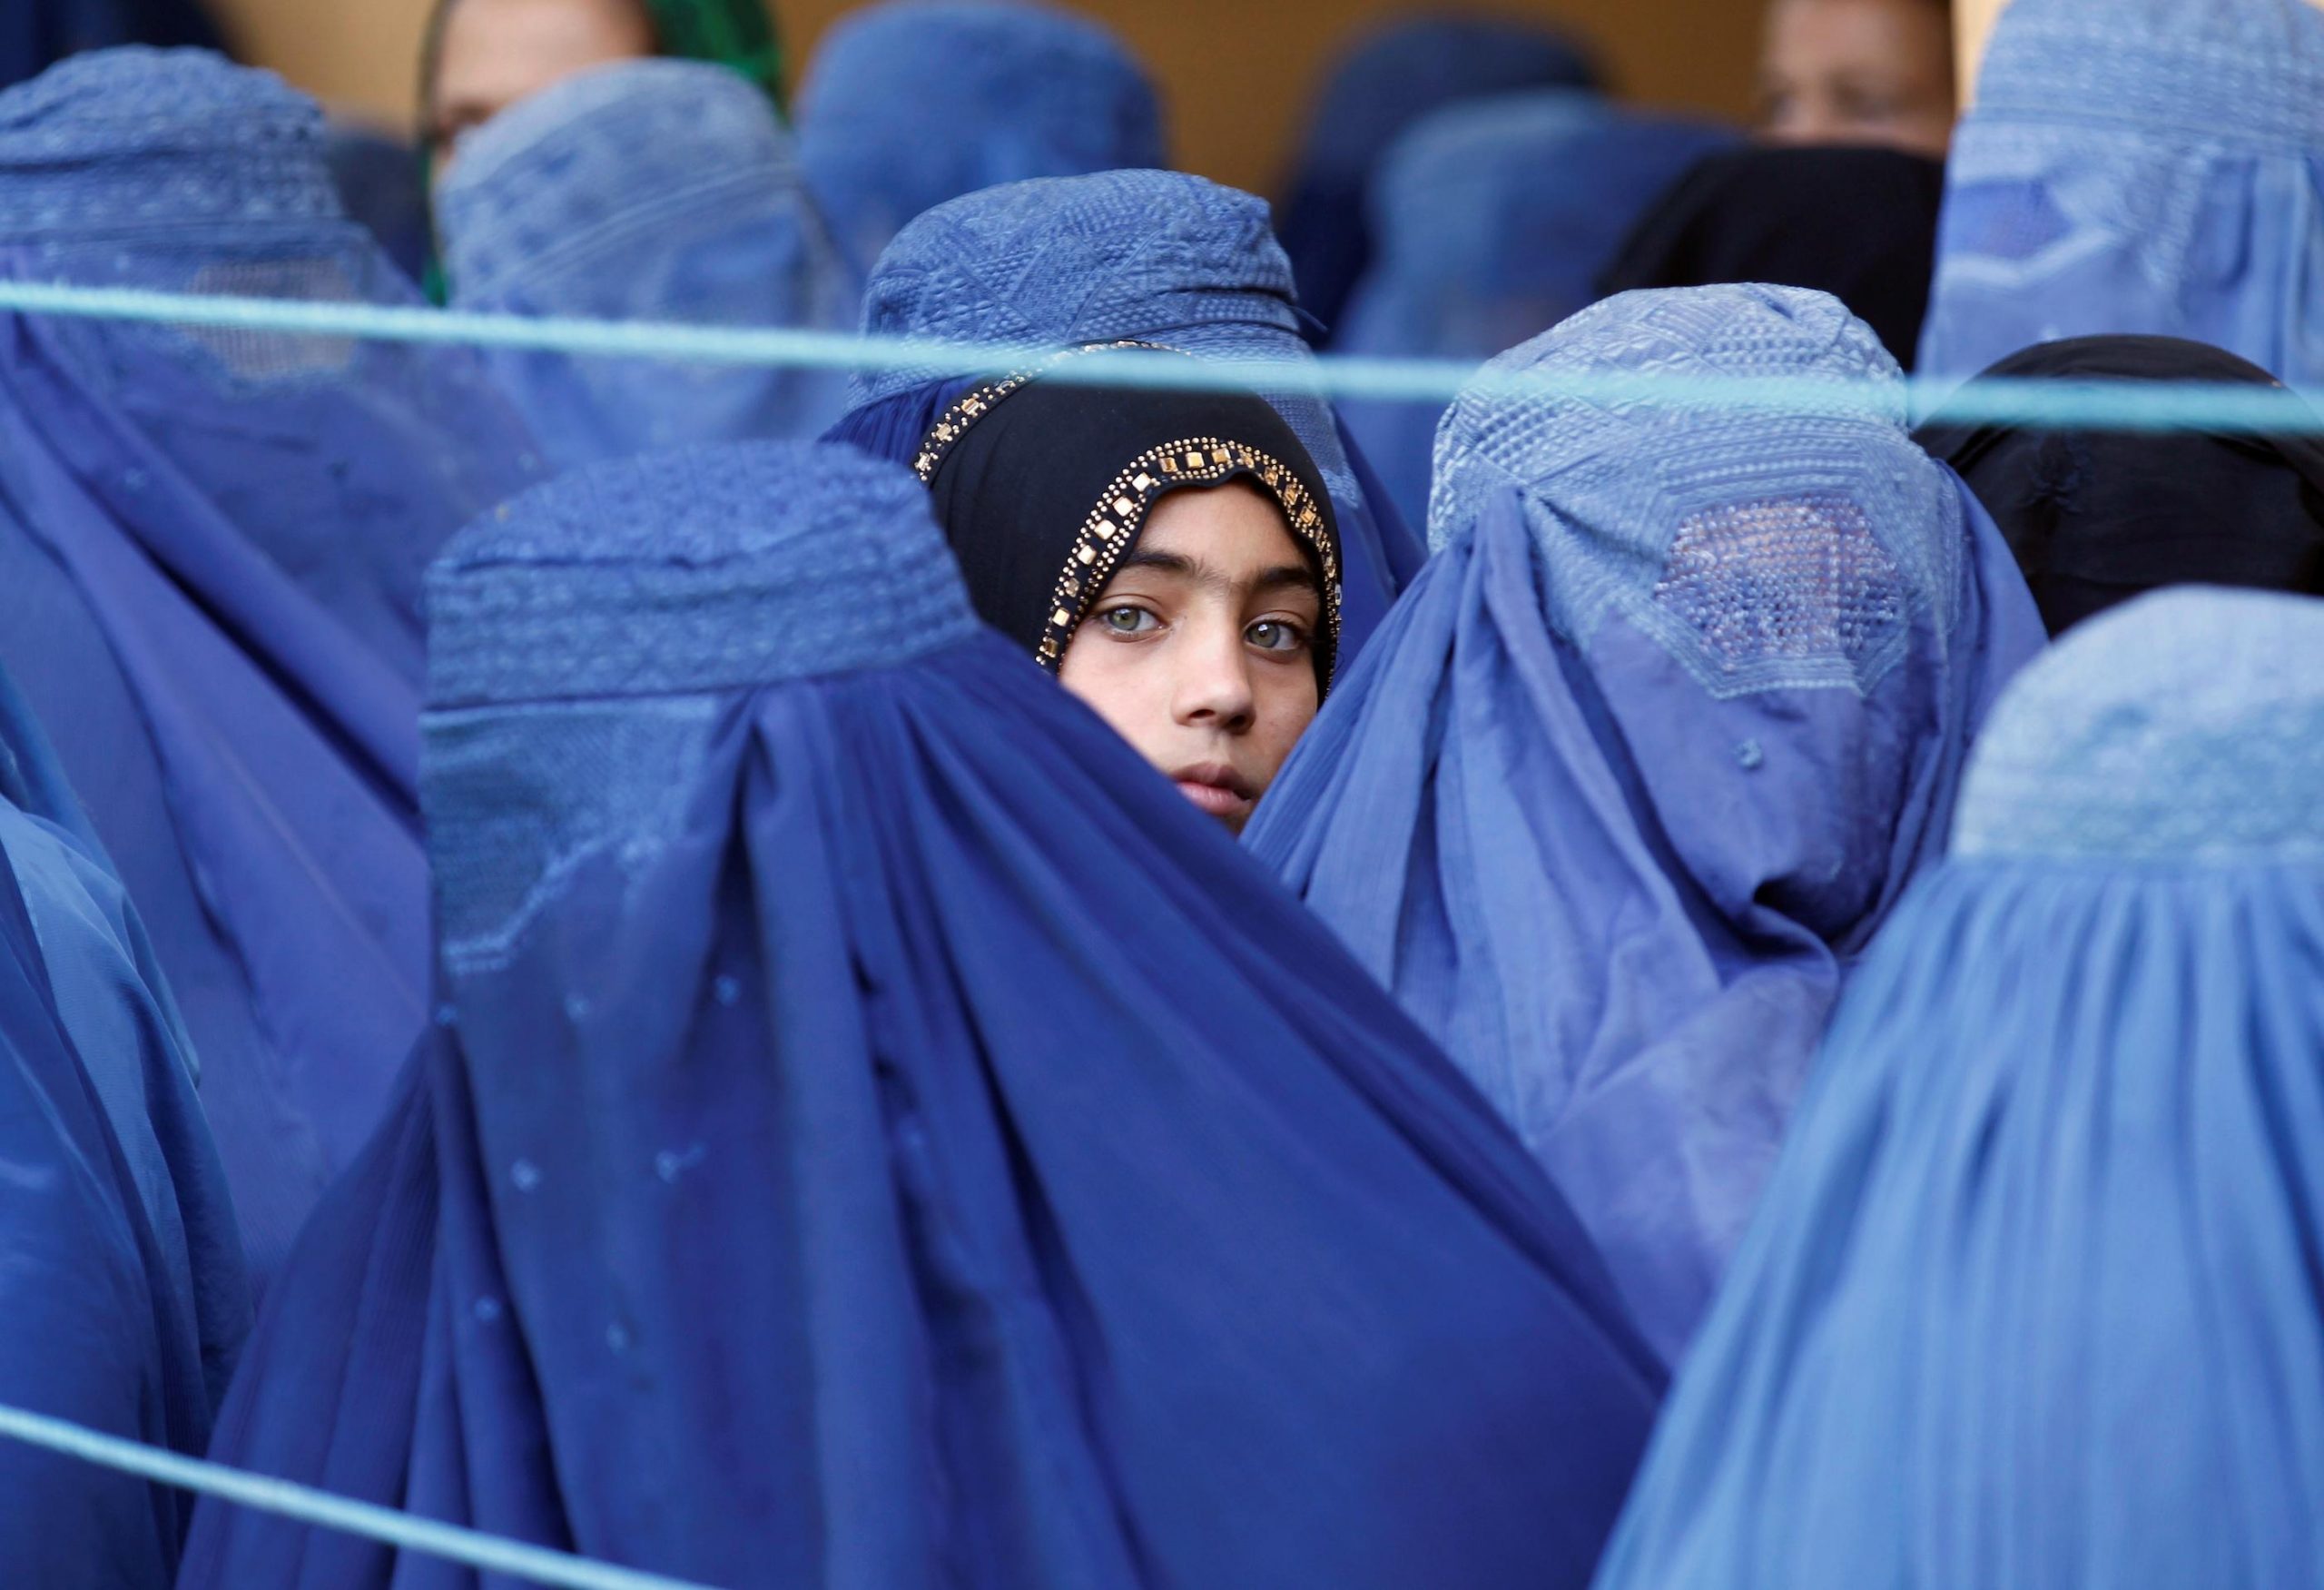 अफ़ग़ानिस्तान: तालिबान ने संकल्प जताने के बावजूद लड़कियों की उच्च स्कूली शिक्षा पर रोक लगाई